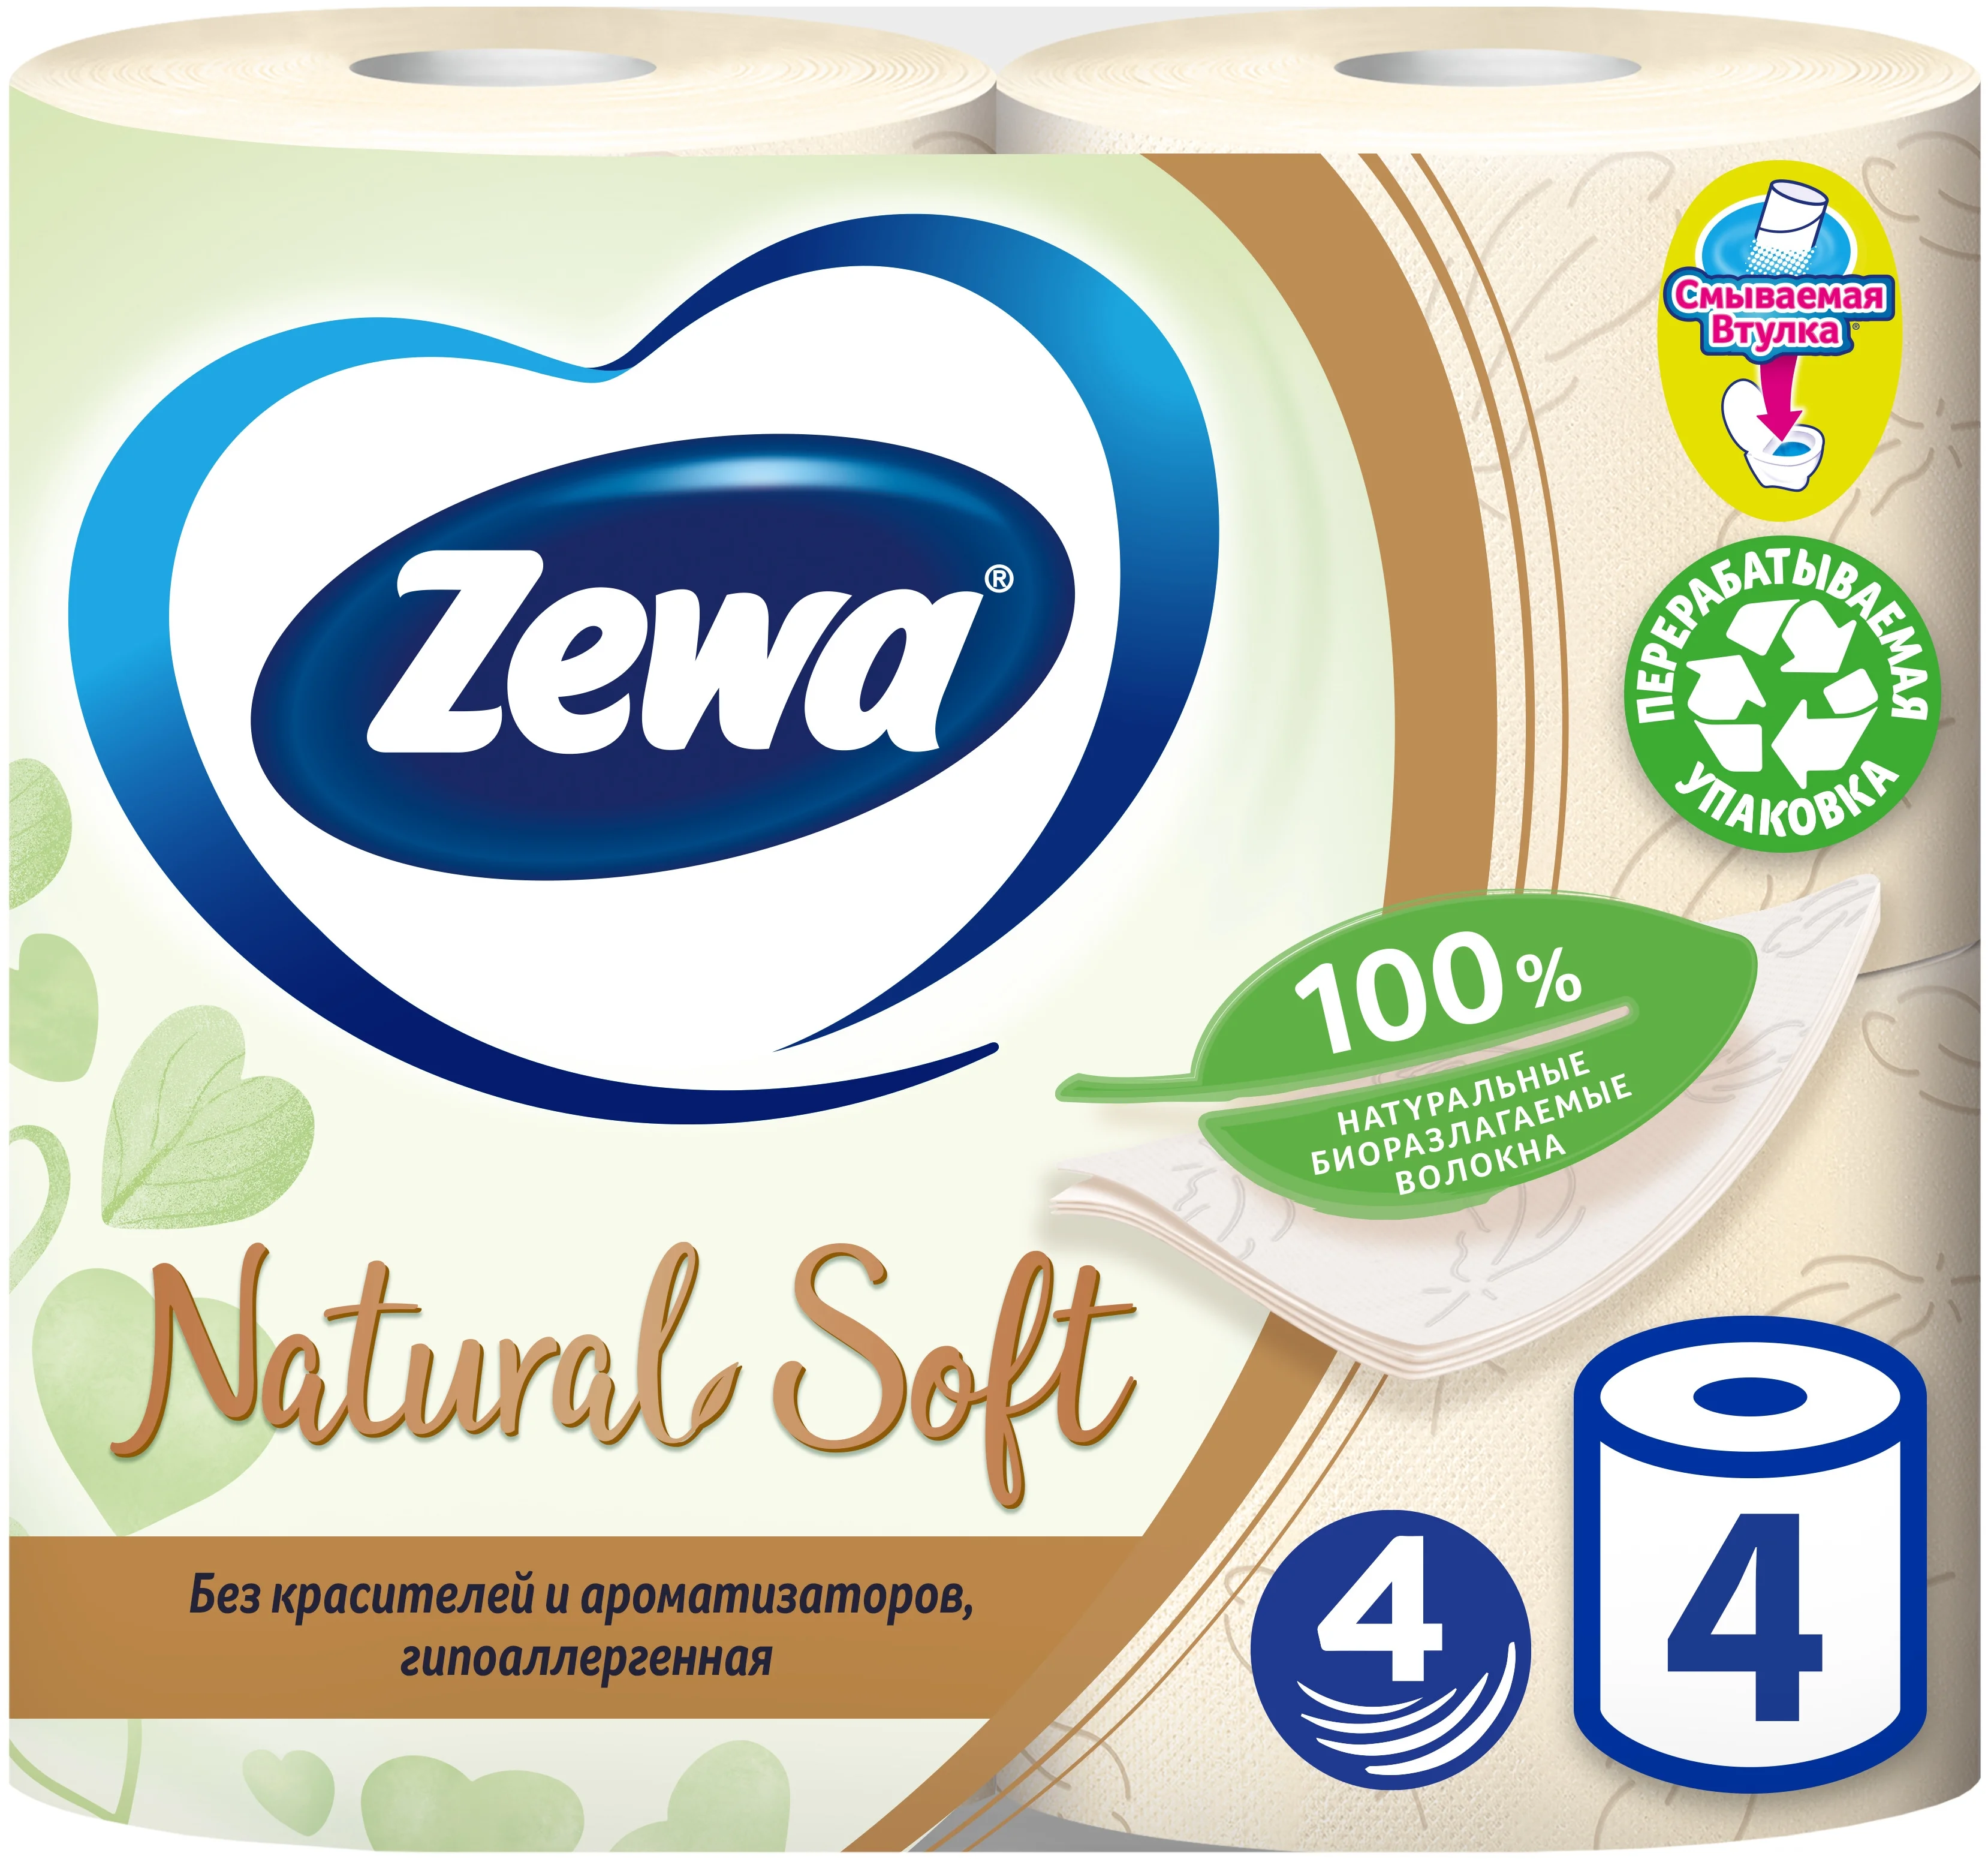 Zewa Natural Soft - количество слоев: 4